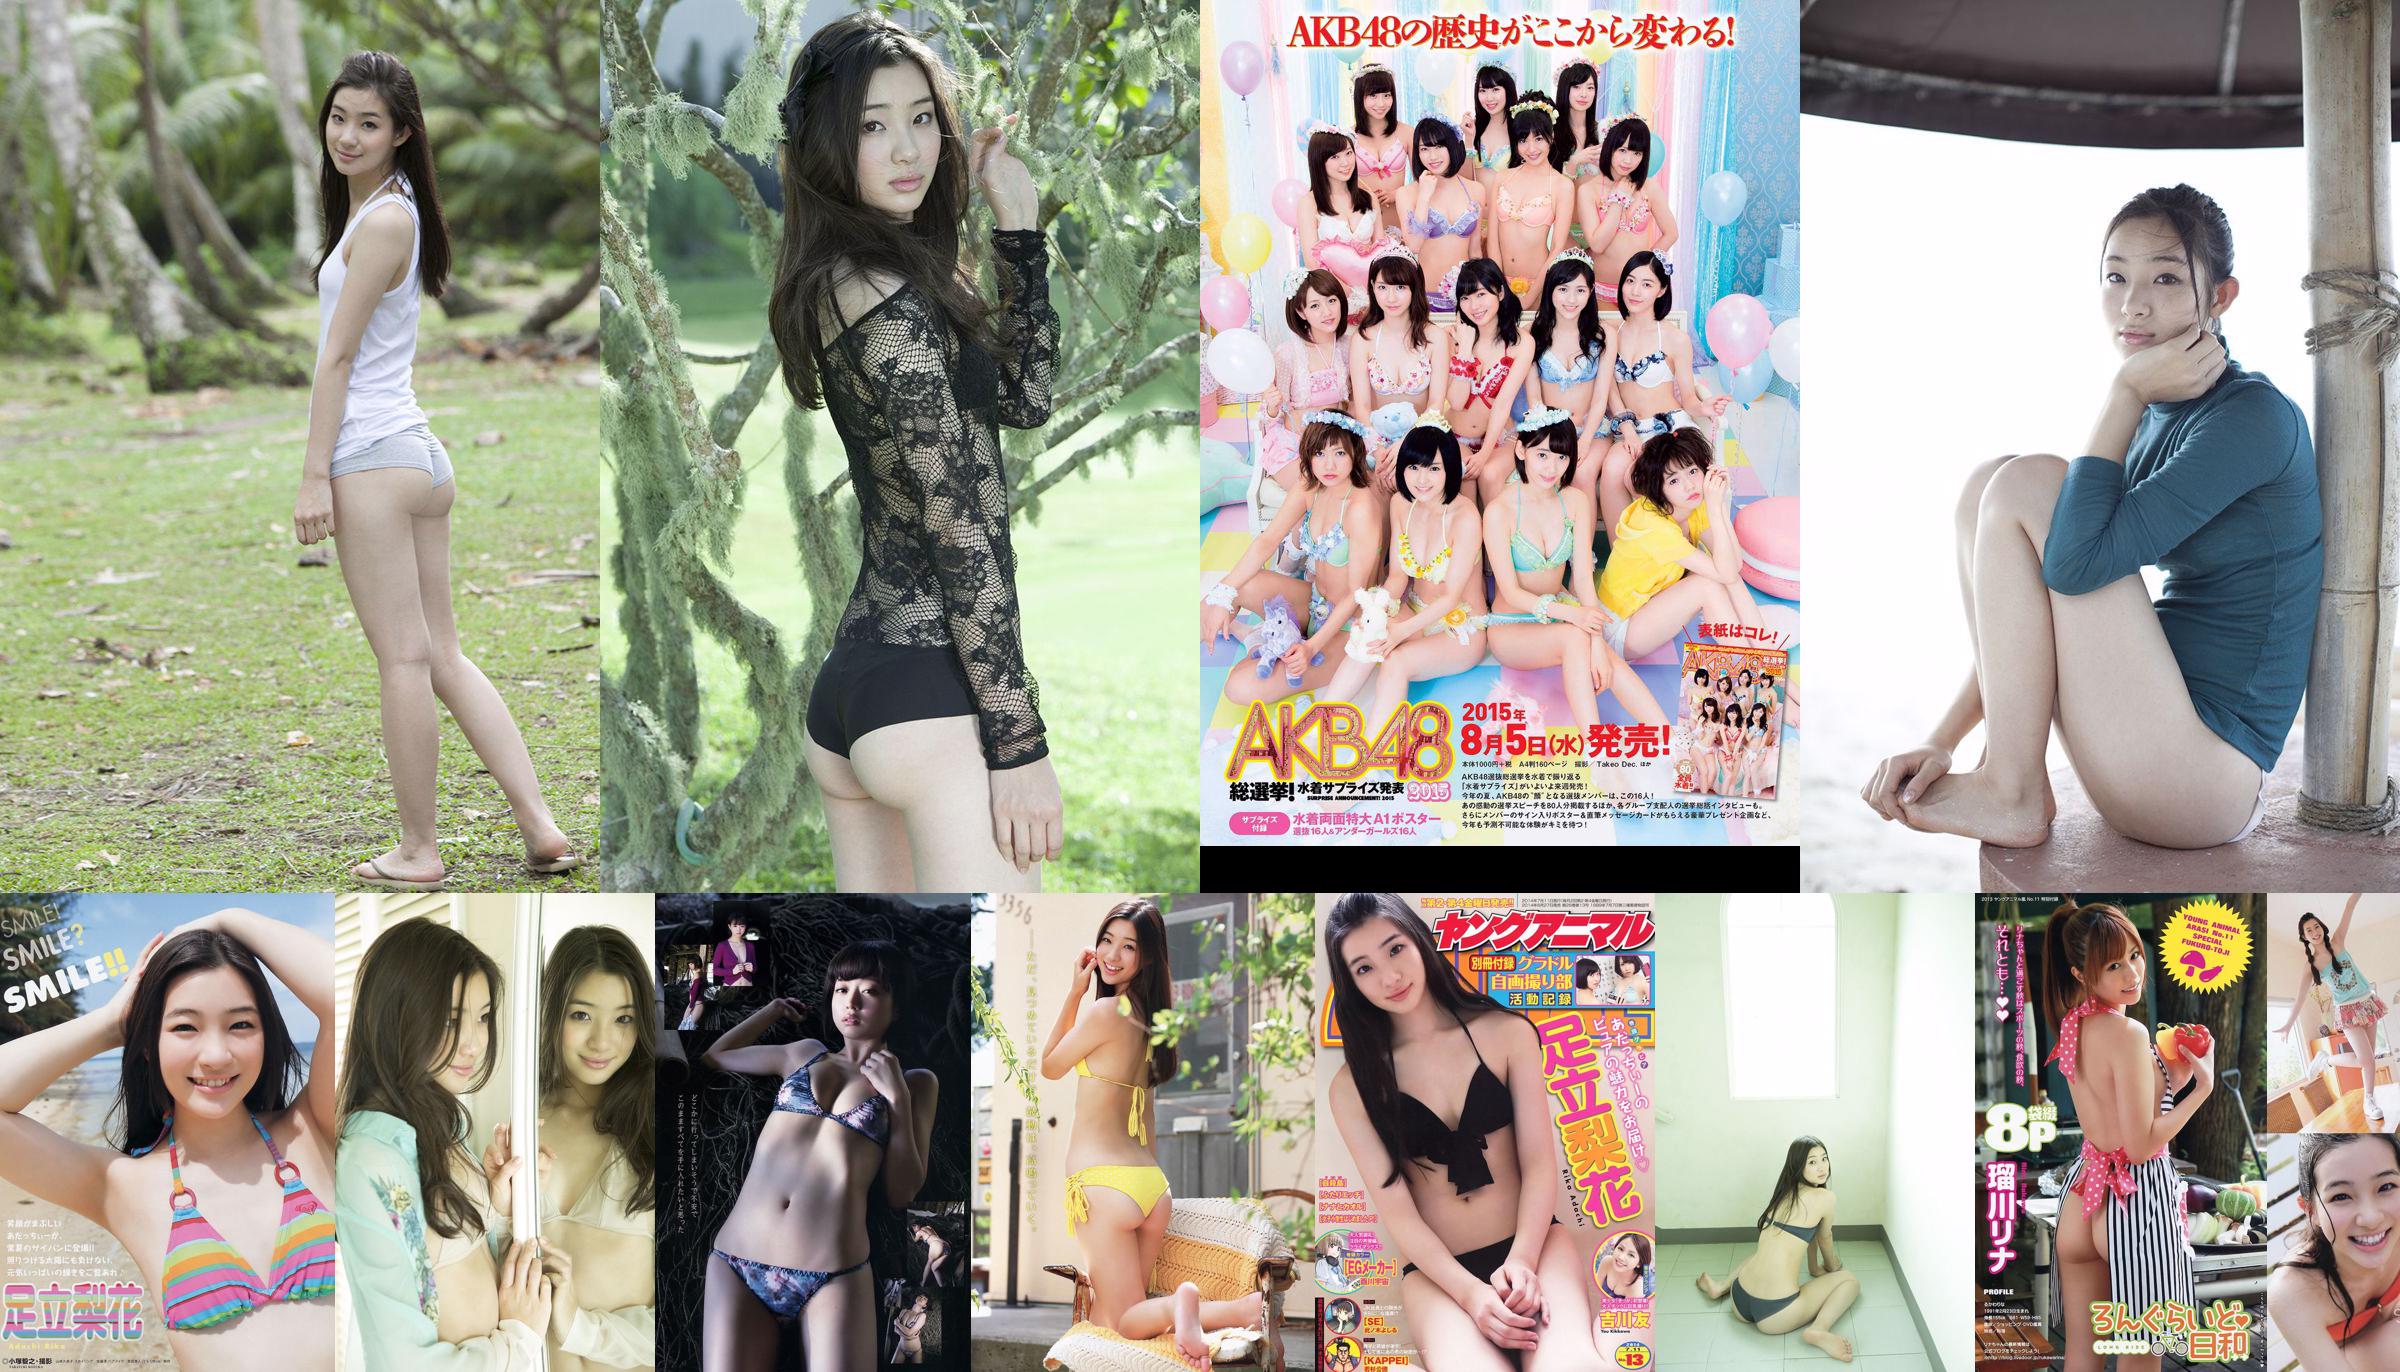 Rika Adachi Yuko Shimizu Nozomi Tachibana Asuka Kishi Rio Uchida [Tygodniowy Playboy] 2015 No.32 Zdjęcie Toshi No.06e2d0 Strona 2